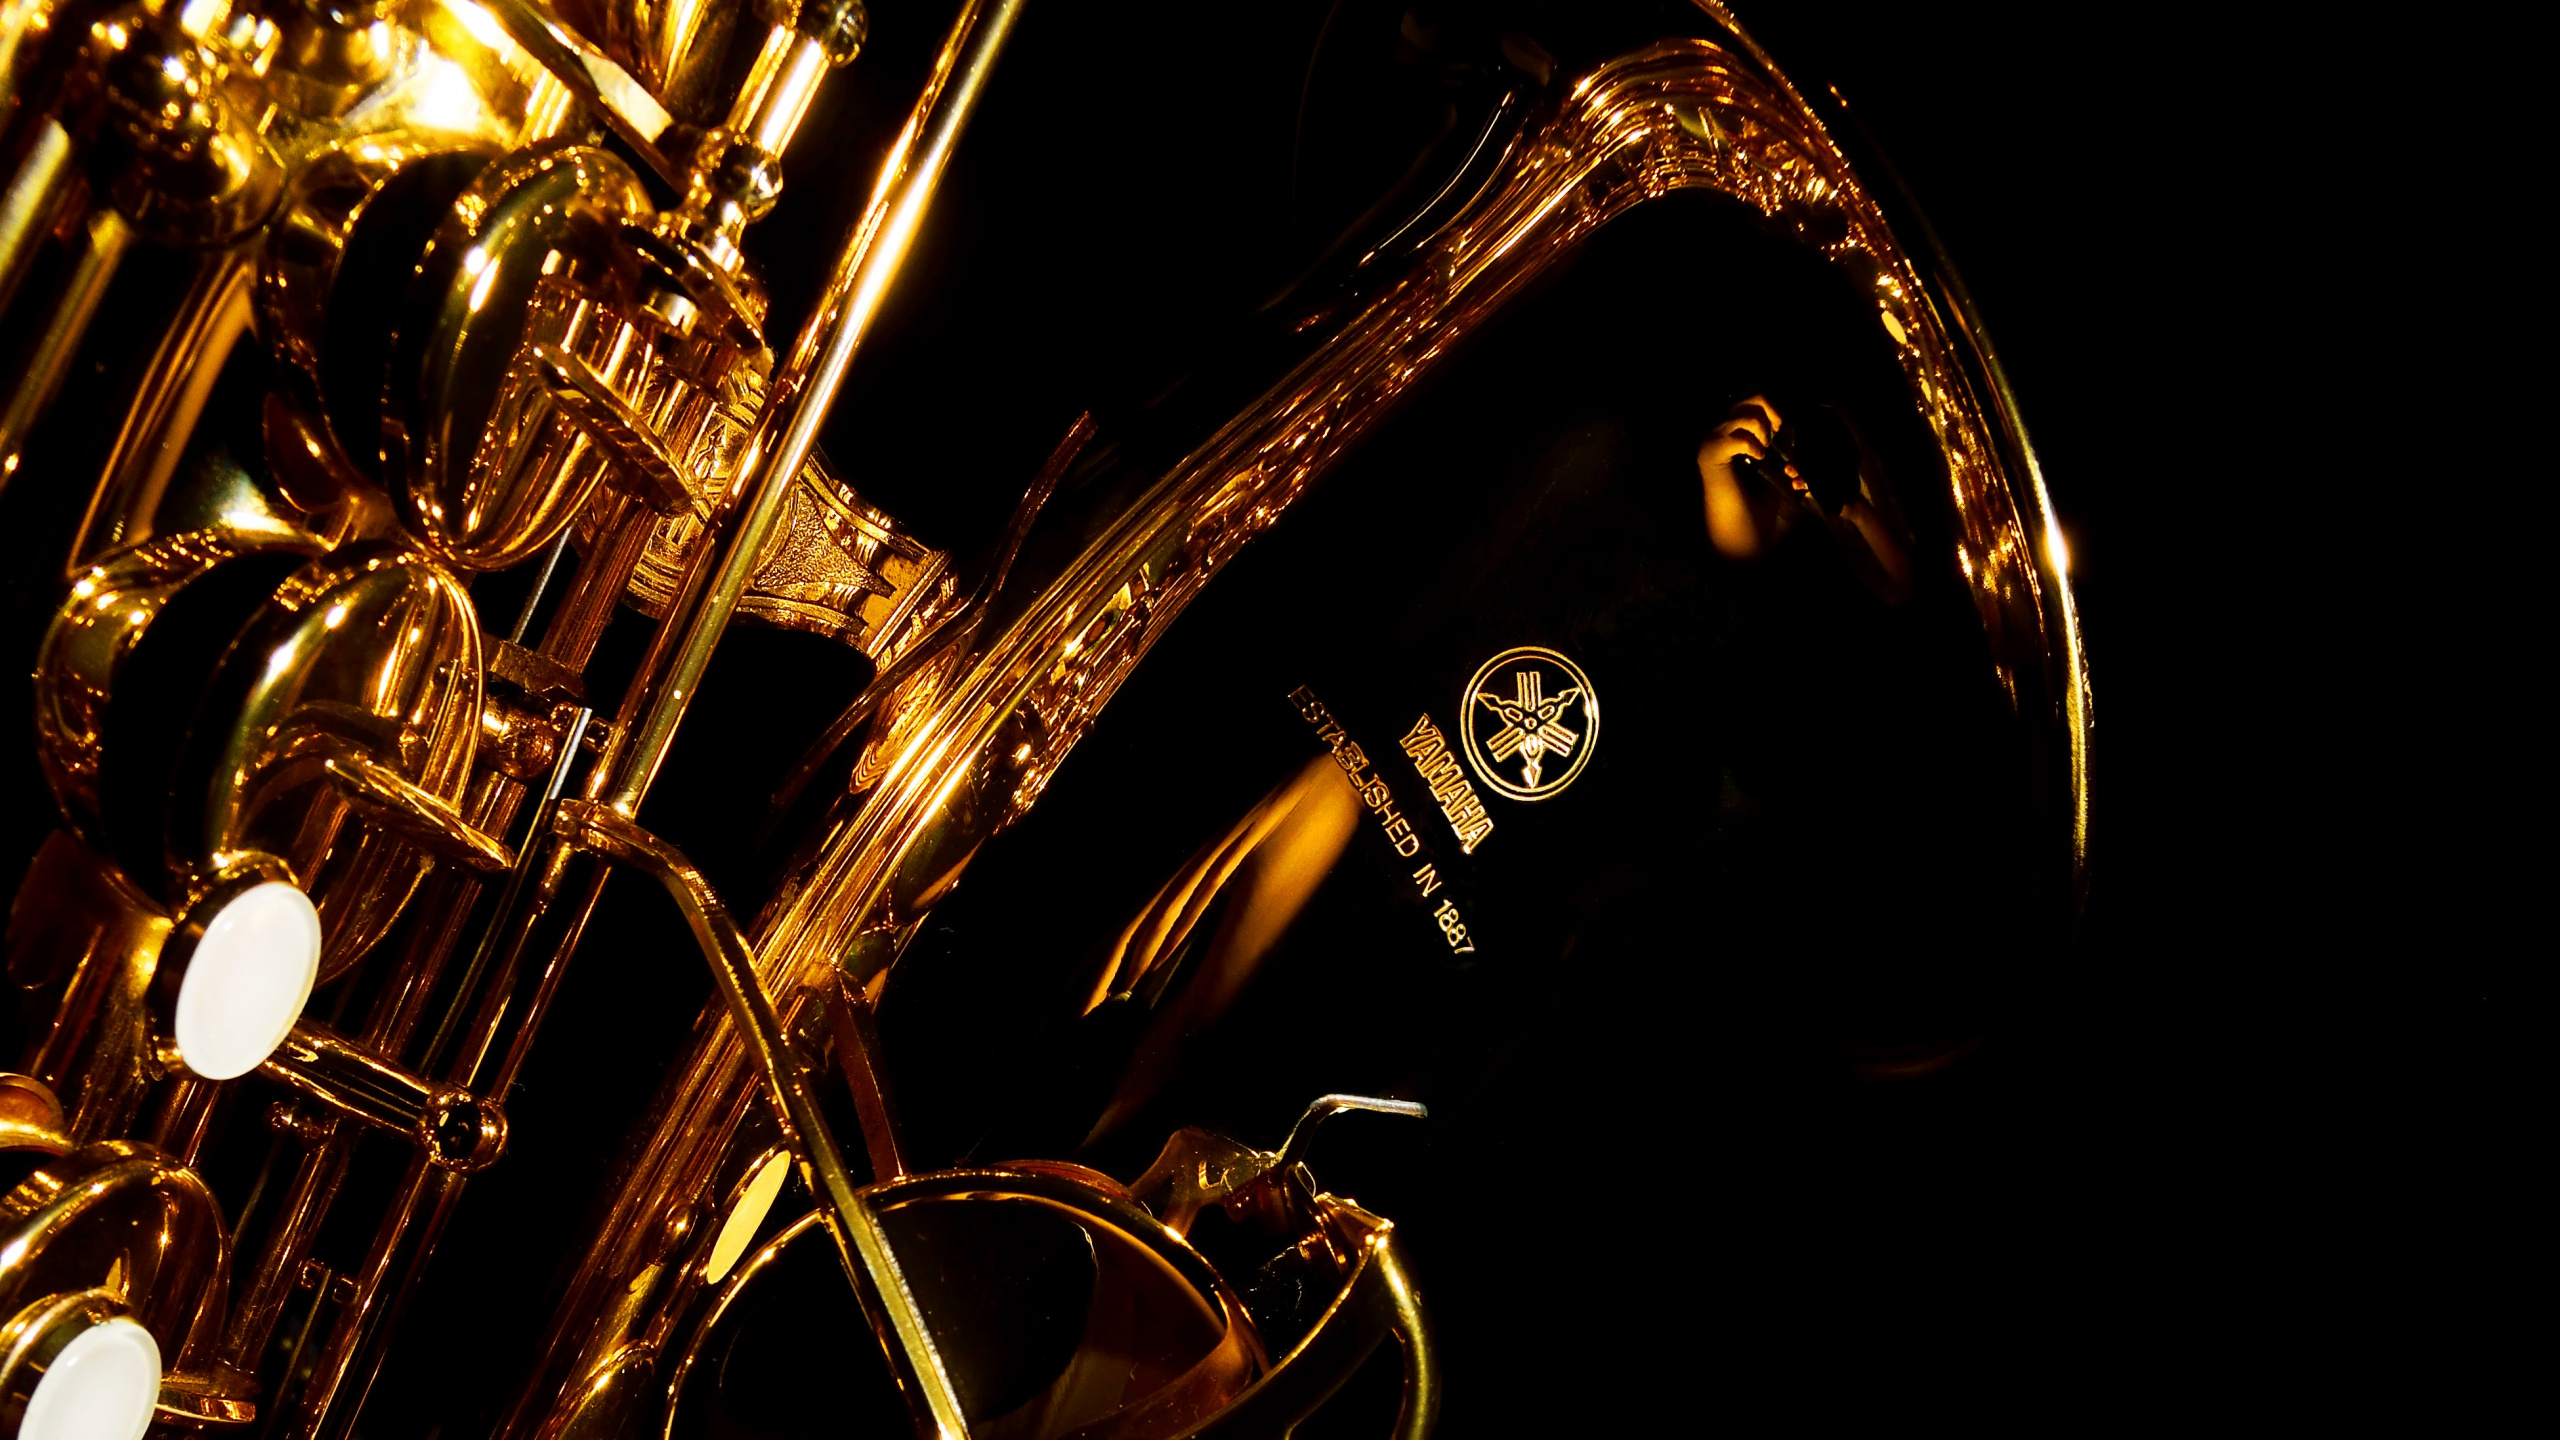 Trompete, Saxophon, Messing-instrument, Wind Instrument, Holzblasinstrument. Wallpaper in 2560x1440 Resolution